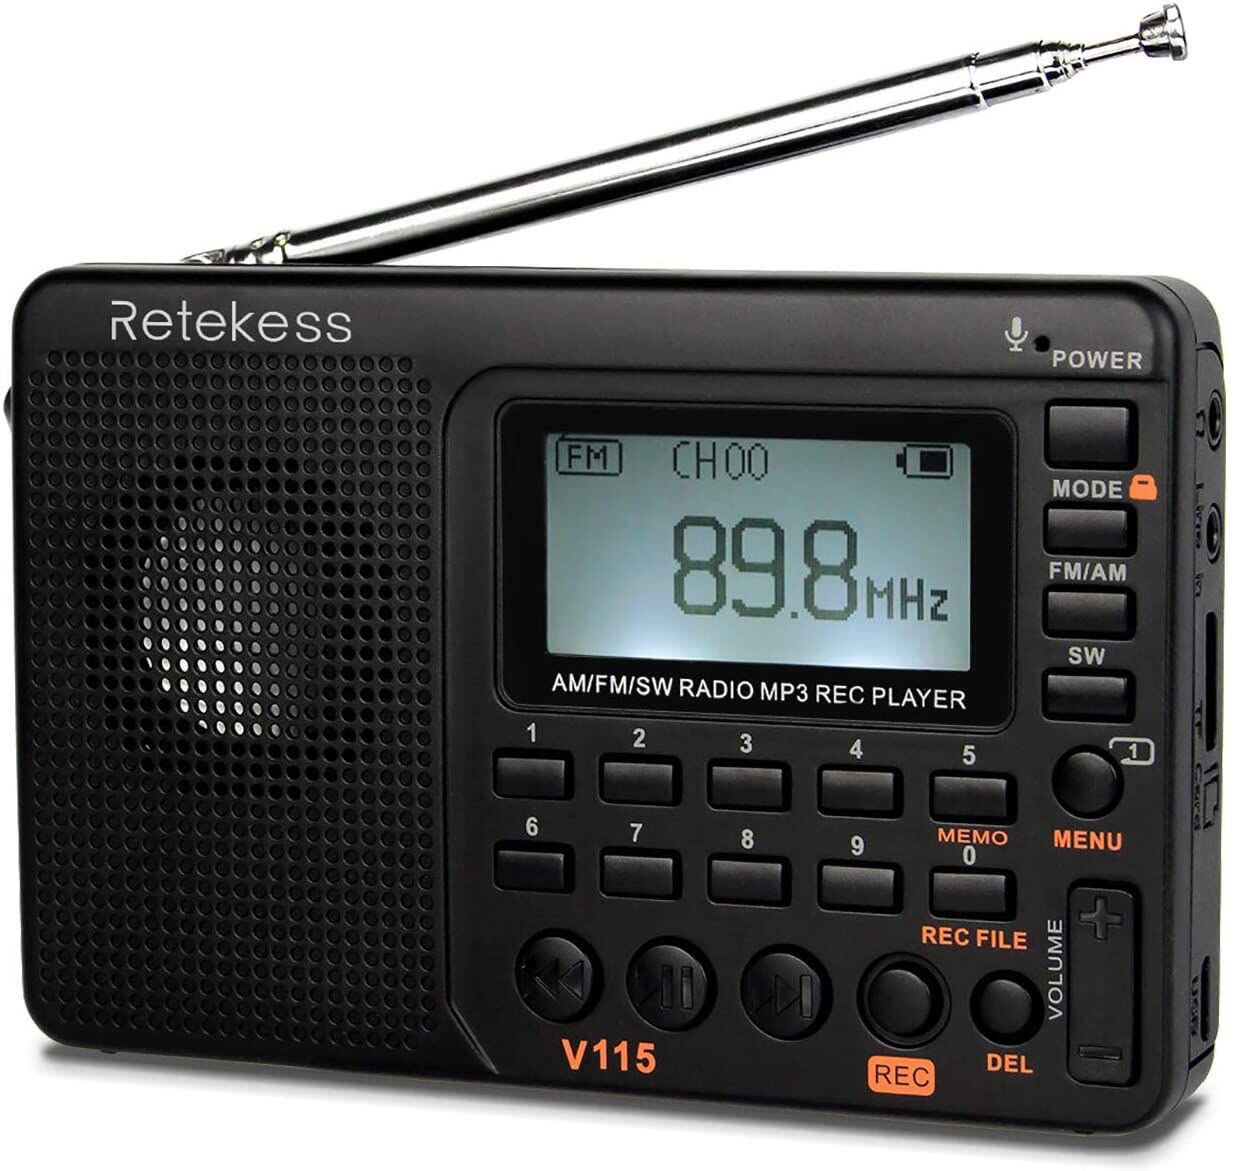 The Retekess V115 Digital Radio